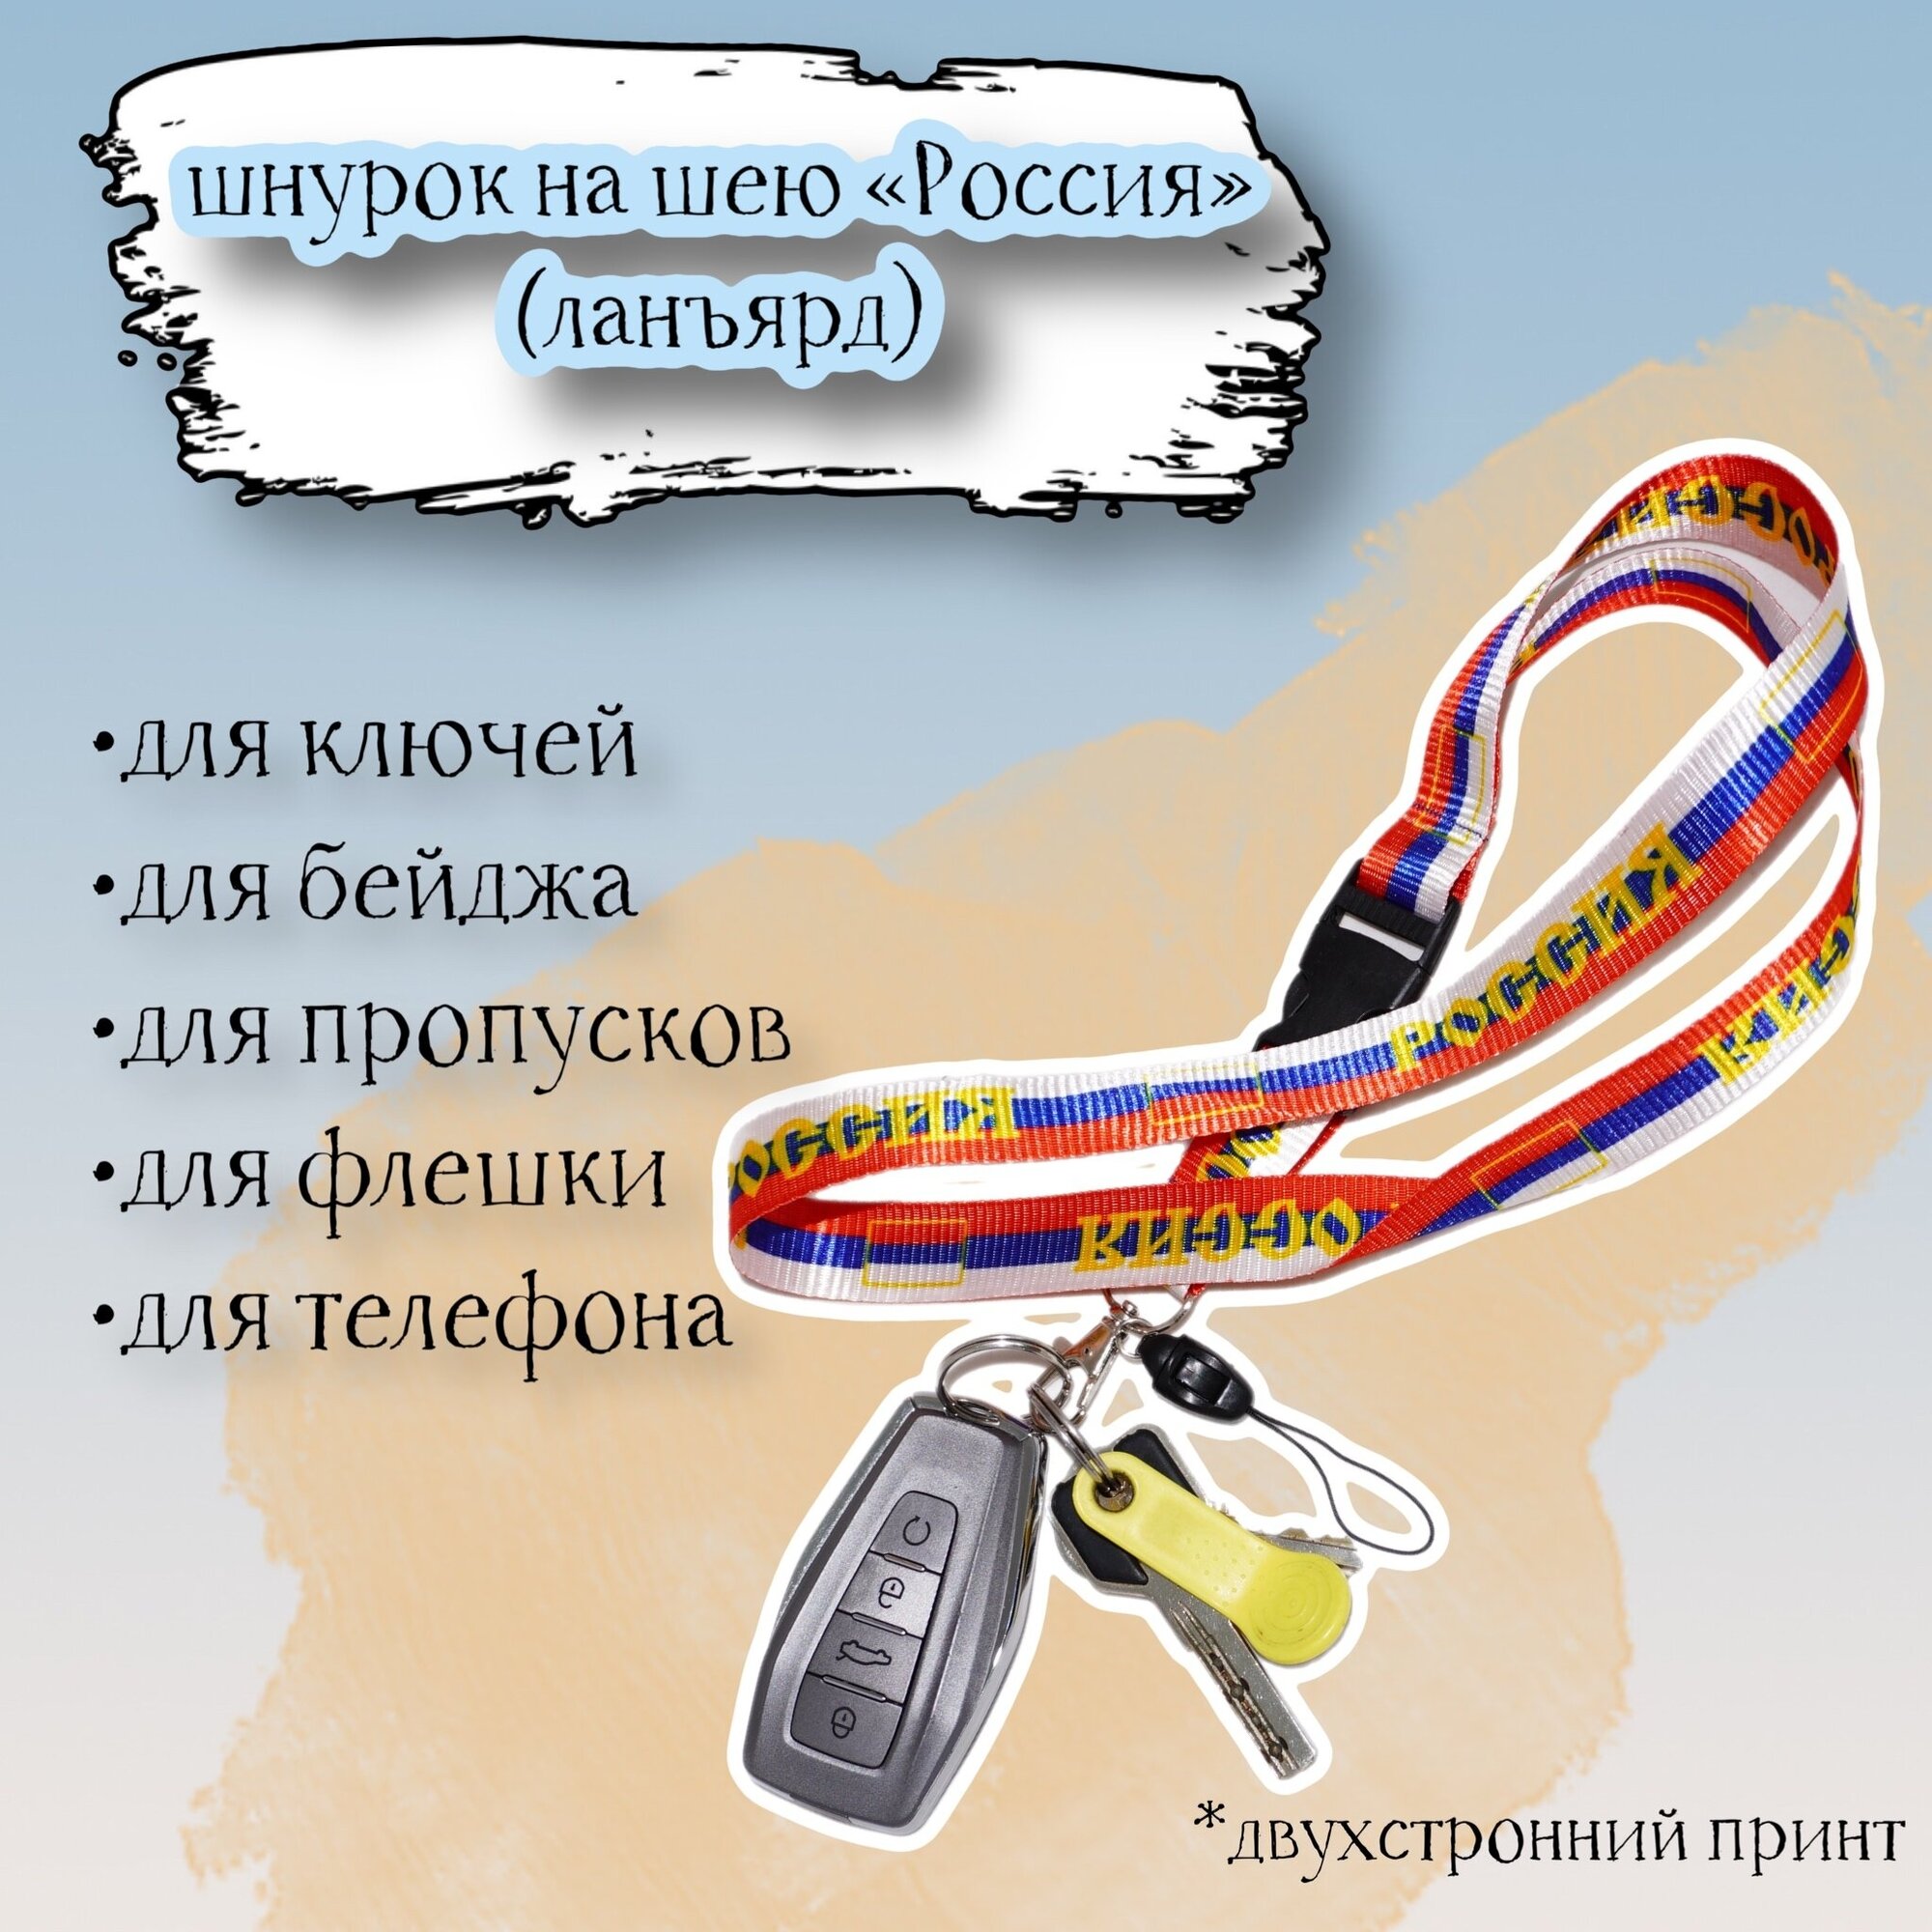 Тканевый шнурок на шею для ключей бейджа телефона "Россия" в цвет флага / Ланьярд / Шнурок с карабином и быстросъёмом триколор 60х2 см